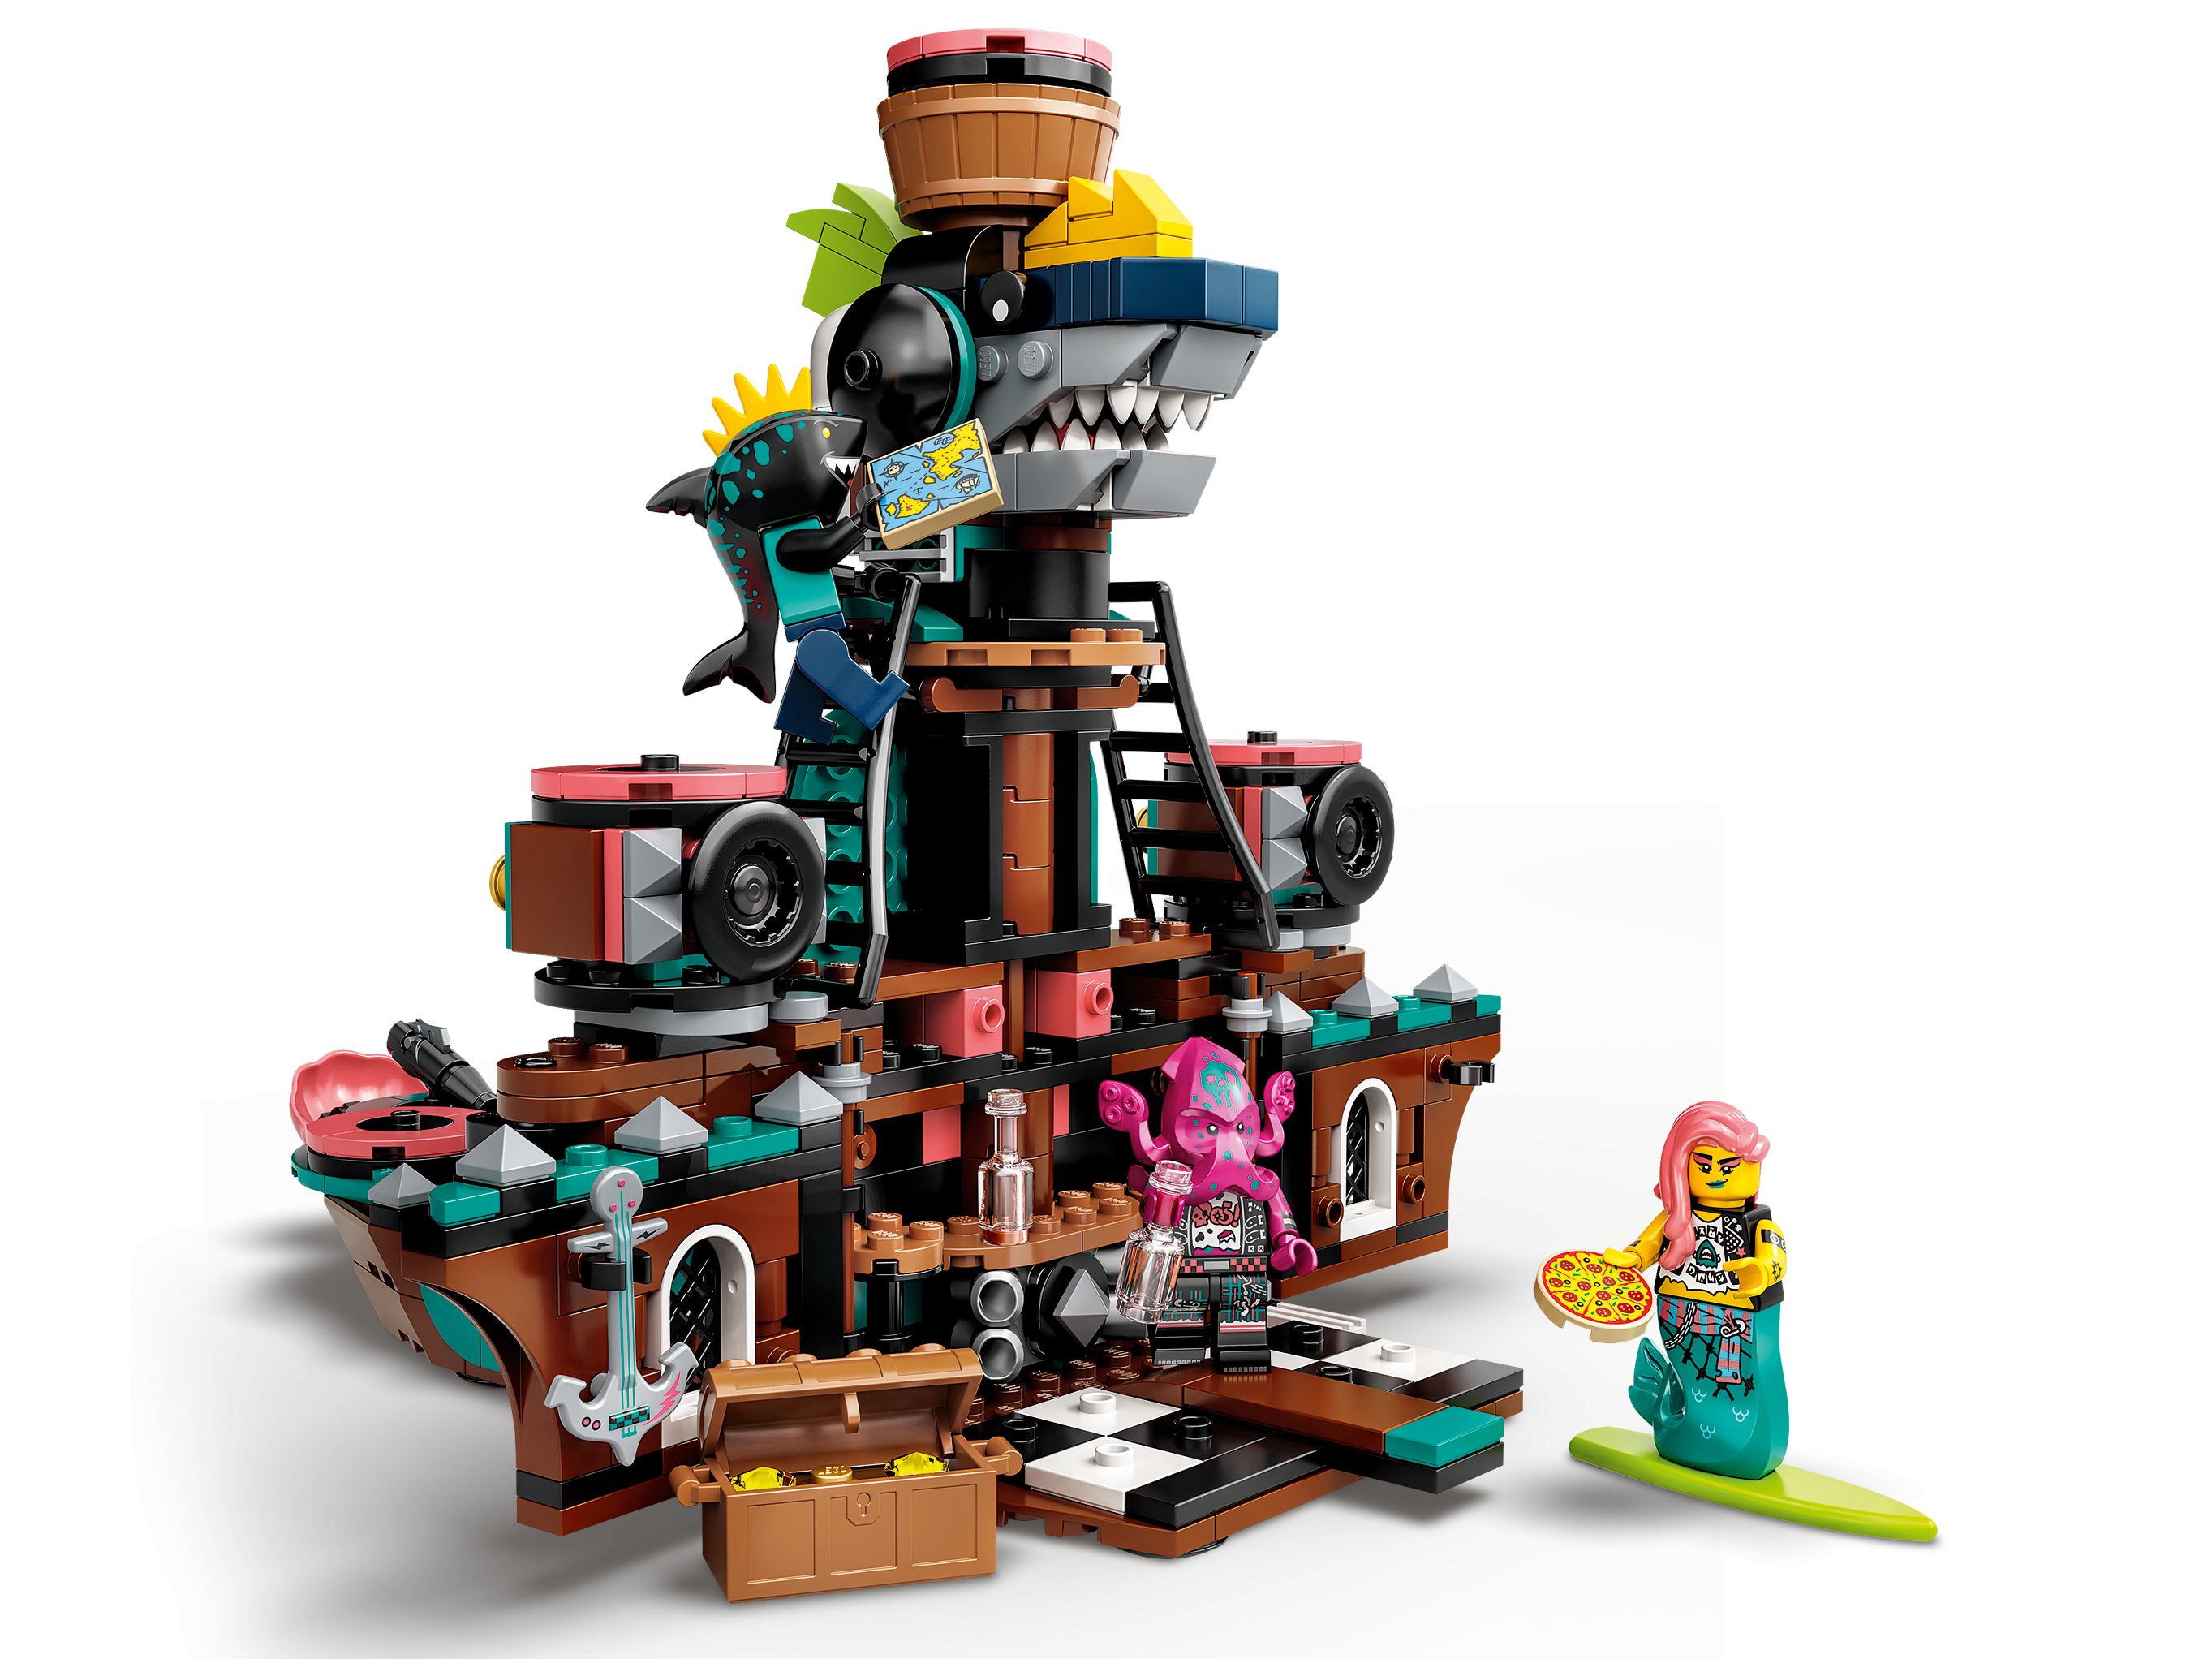 LEGO Vidiyo 43114 Punk Pirate Ship LEGO_43114_alt4.jpg